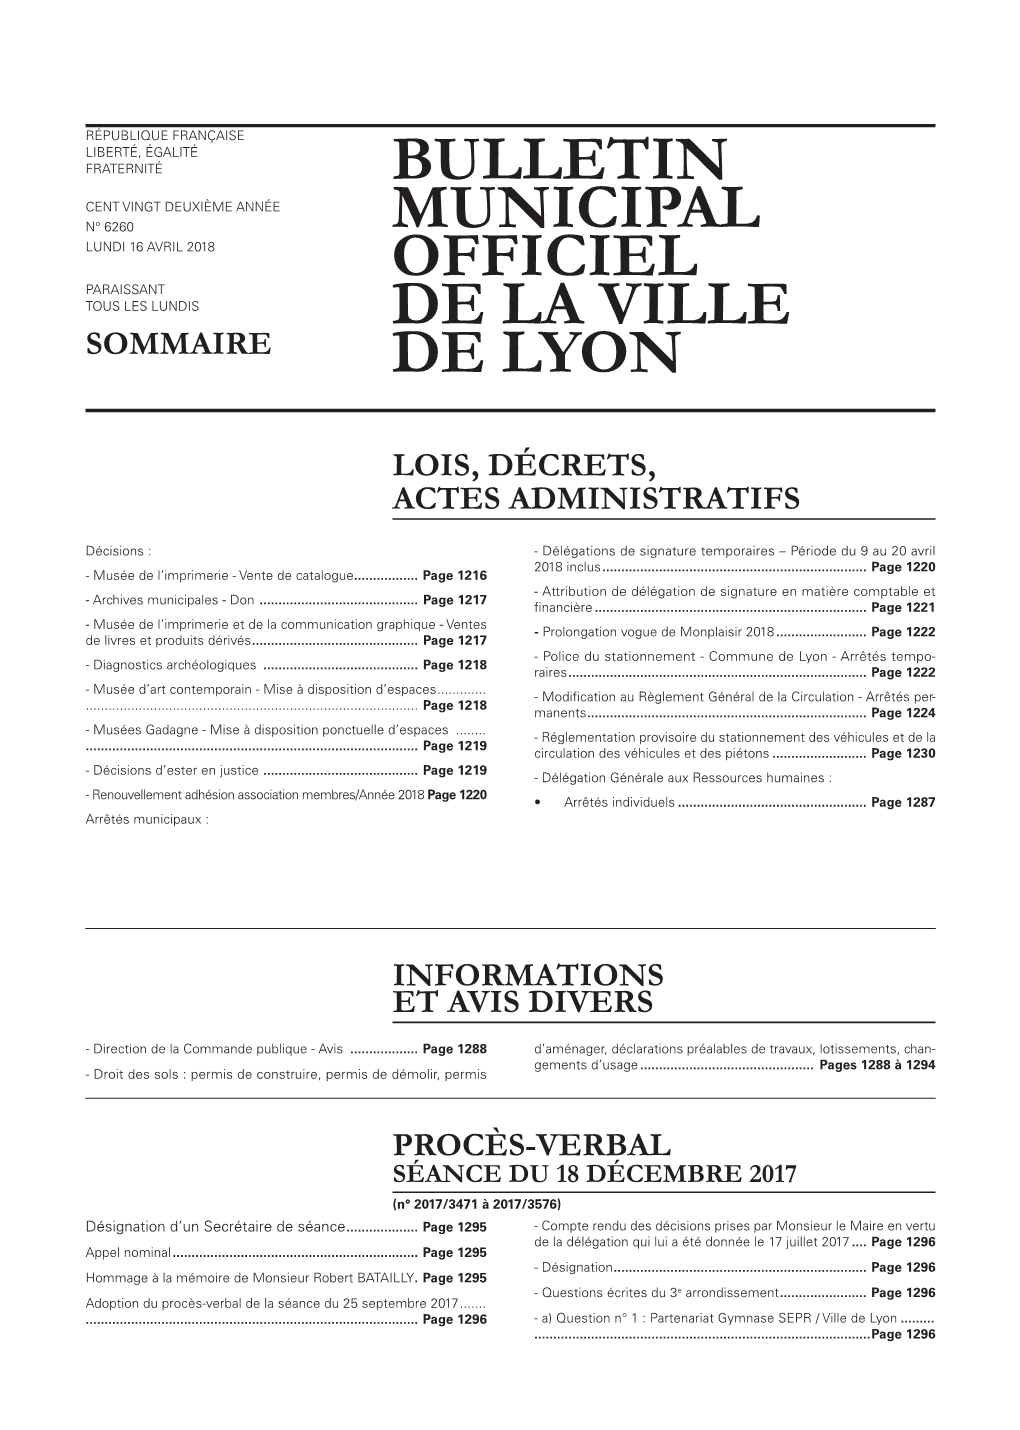 BULLETIN MUNICIPAL OFFICIEL DE LA VILLE DE LYON 16 Avril 2018